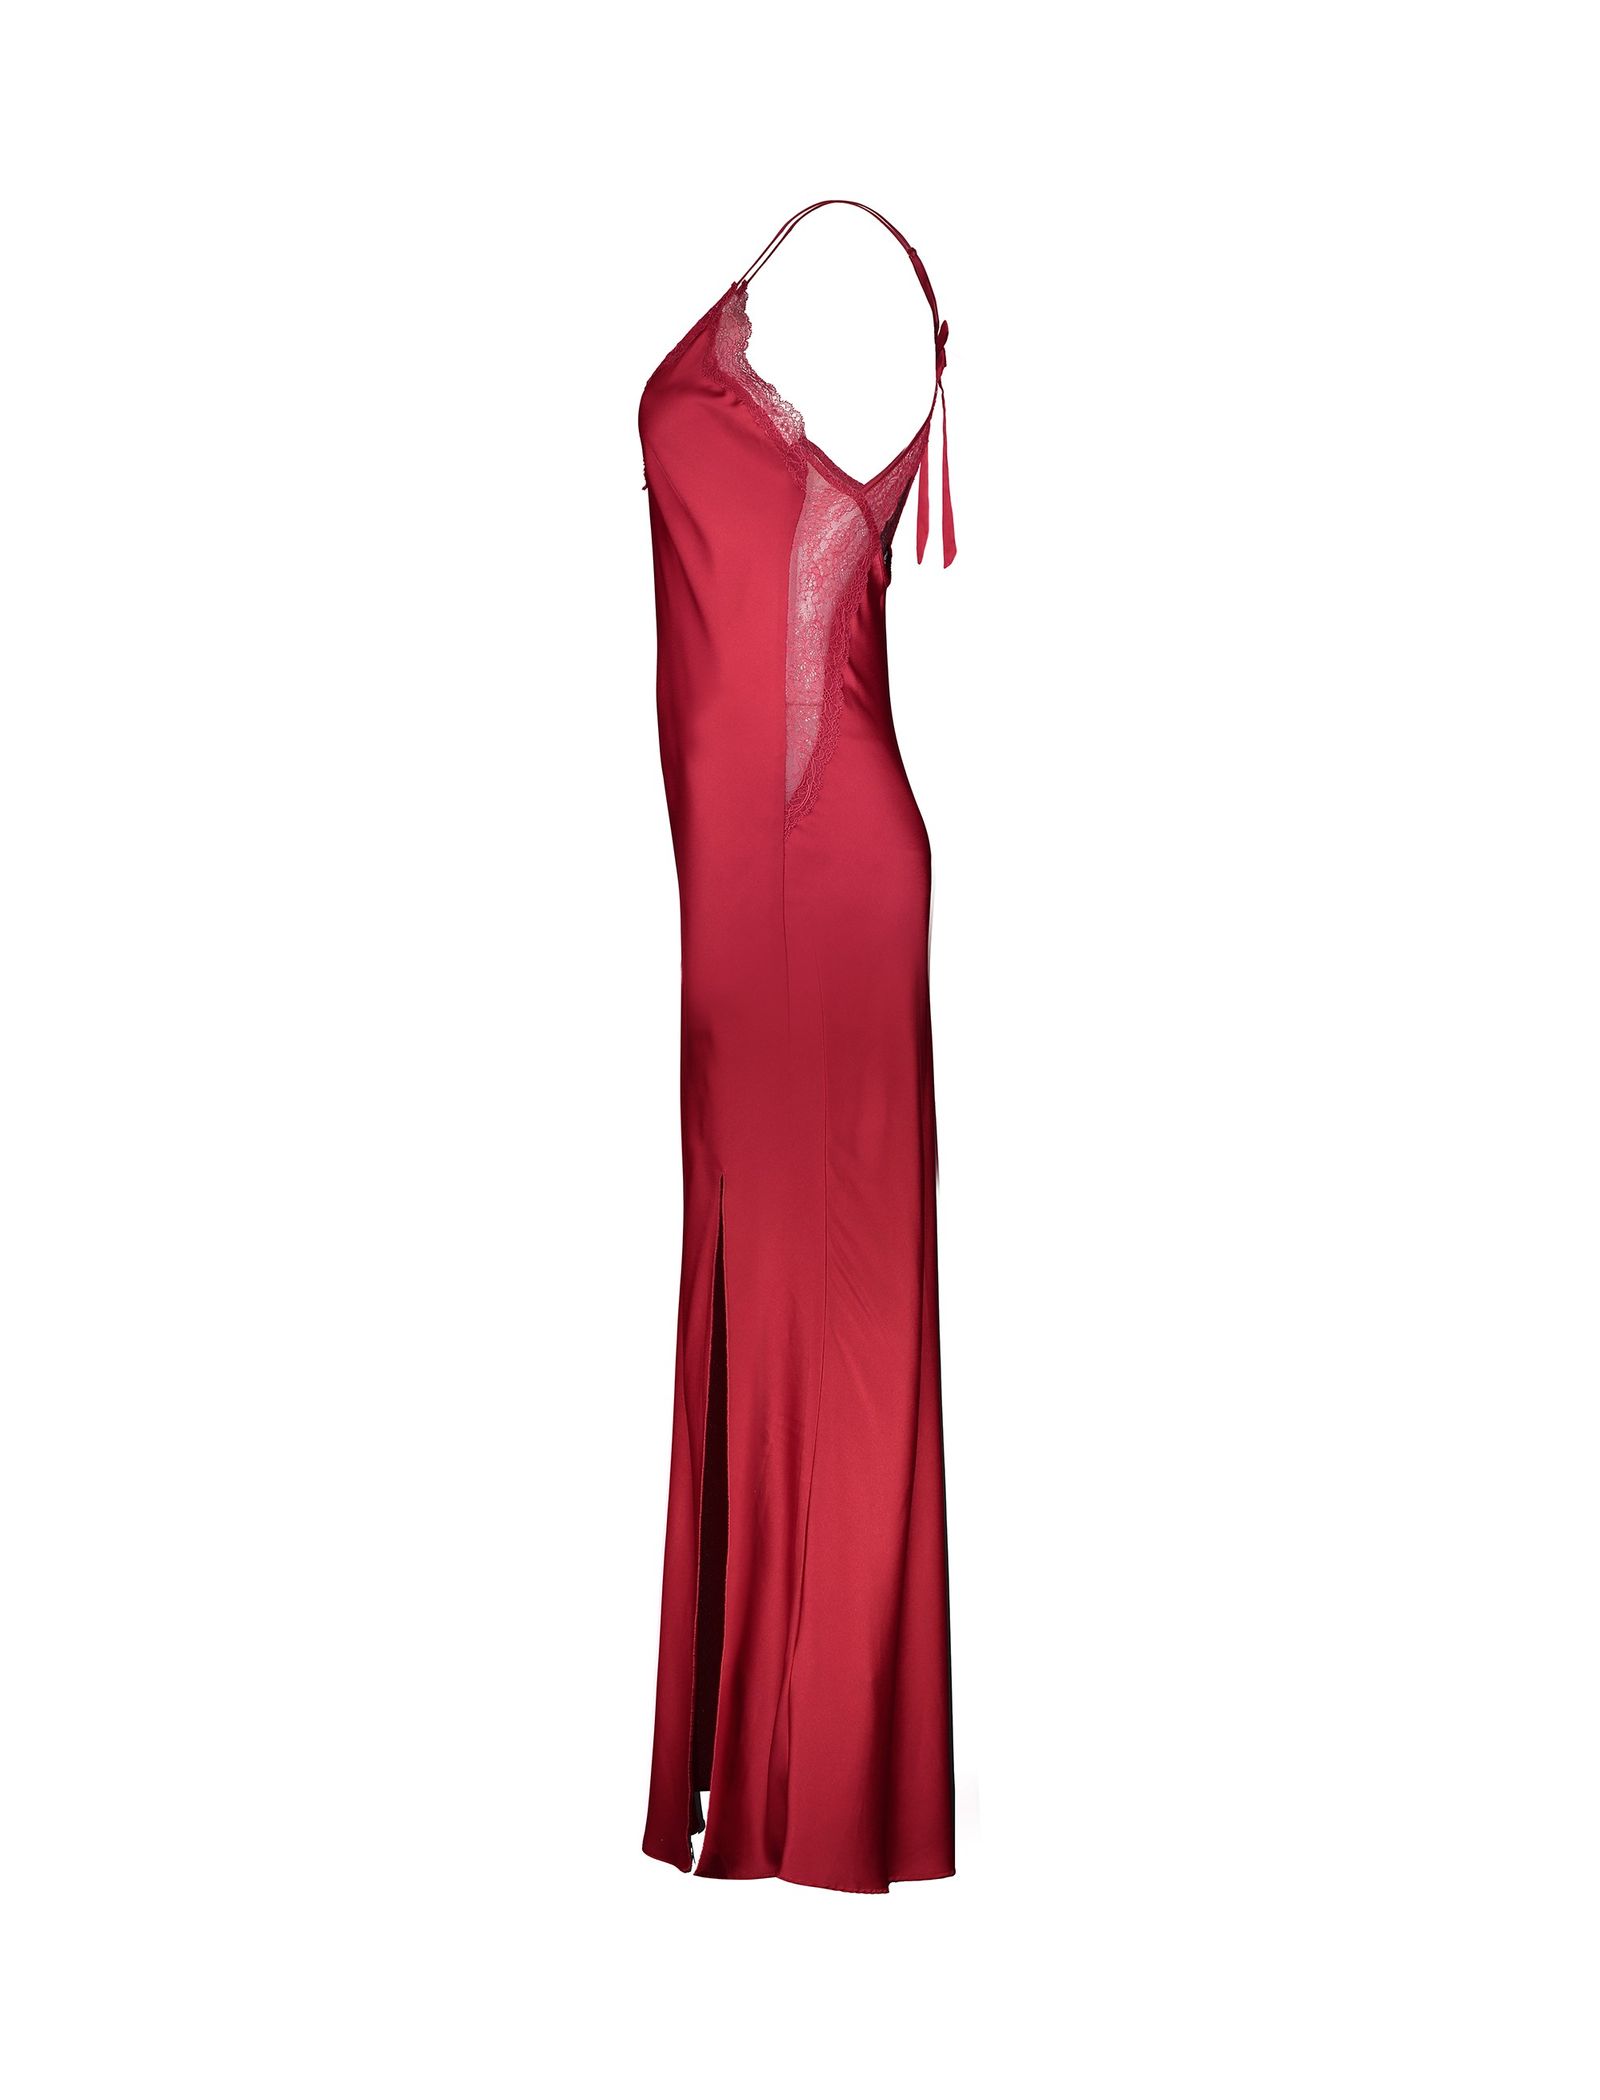 لباس خواب بلند زنانه - اتام - قرمز - 4